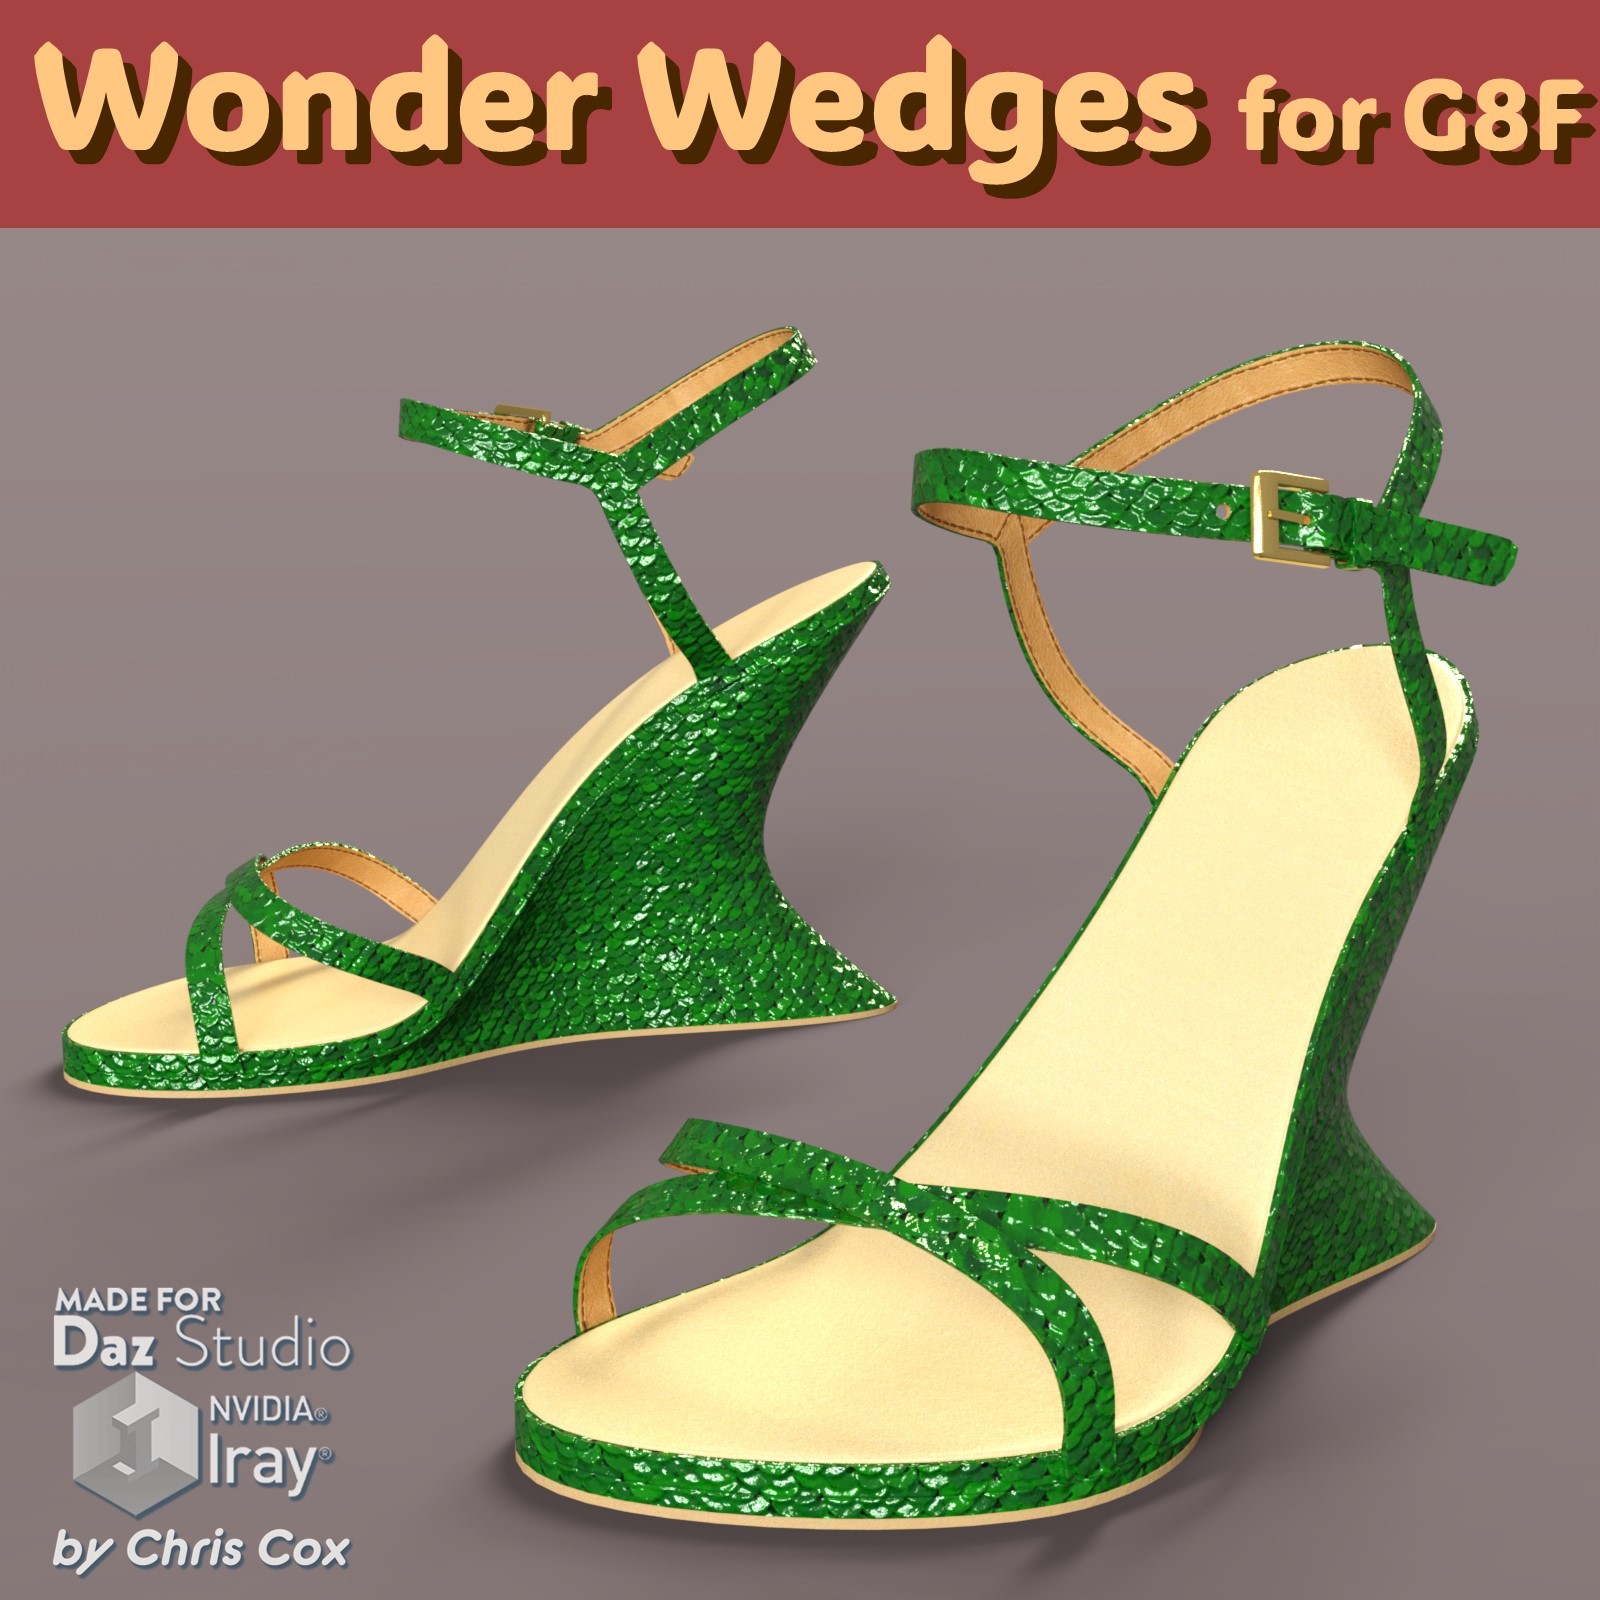 Wonder Wedges for G8Fee20dd53c9523295